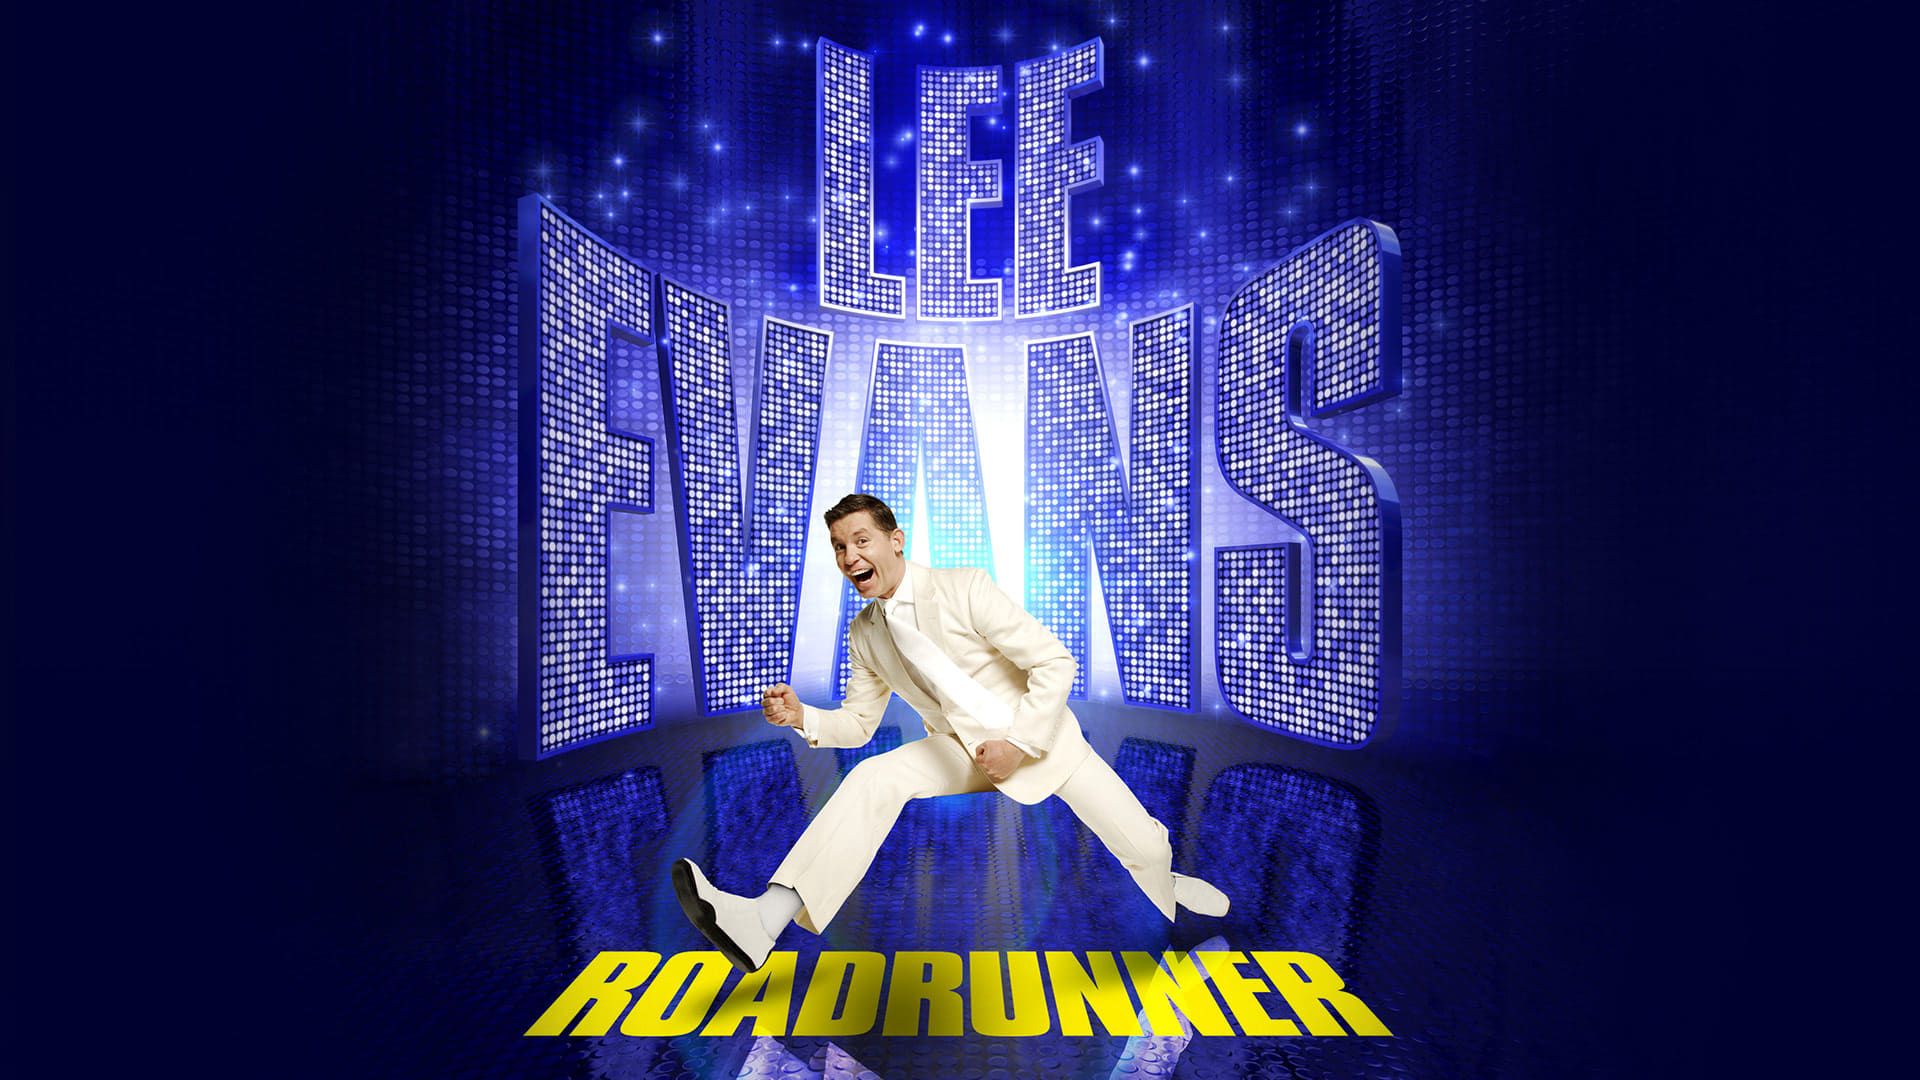 Lee Evans: Roadrunner Live at the O2 background